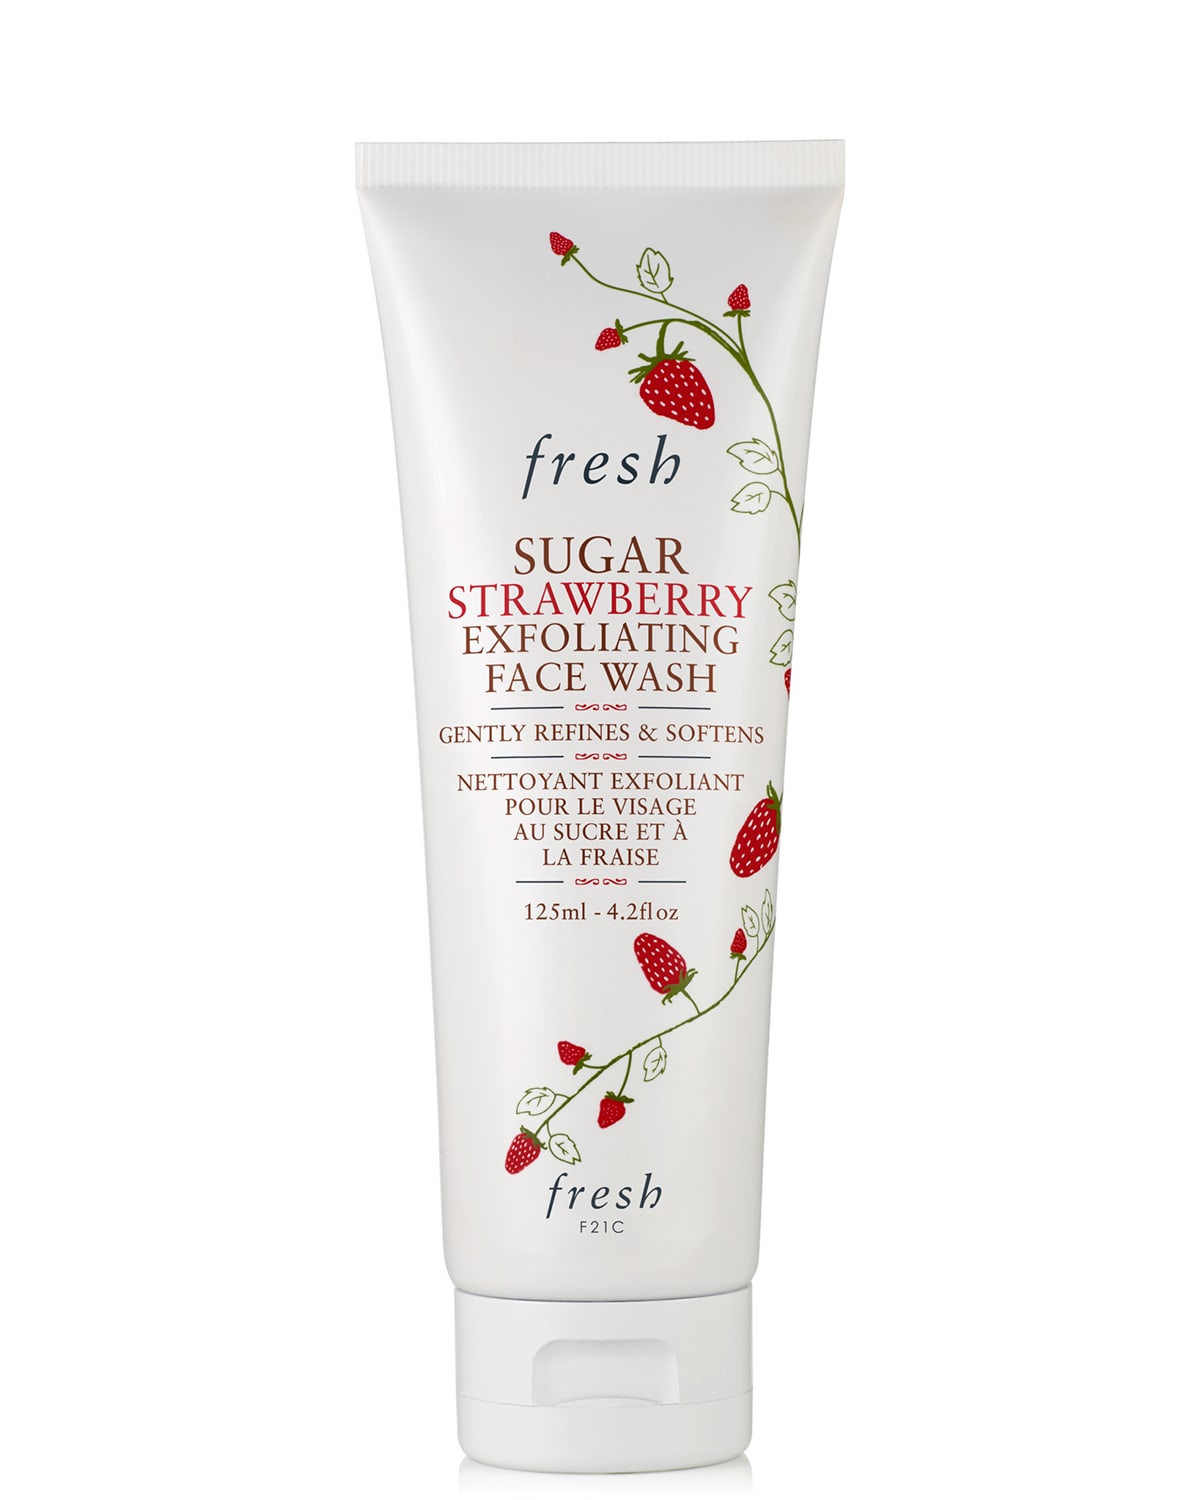 Sugar Strawberry Exfoliating Face Wash, 4.2 oz.